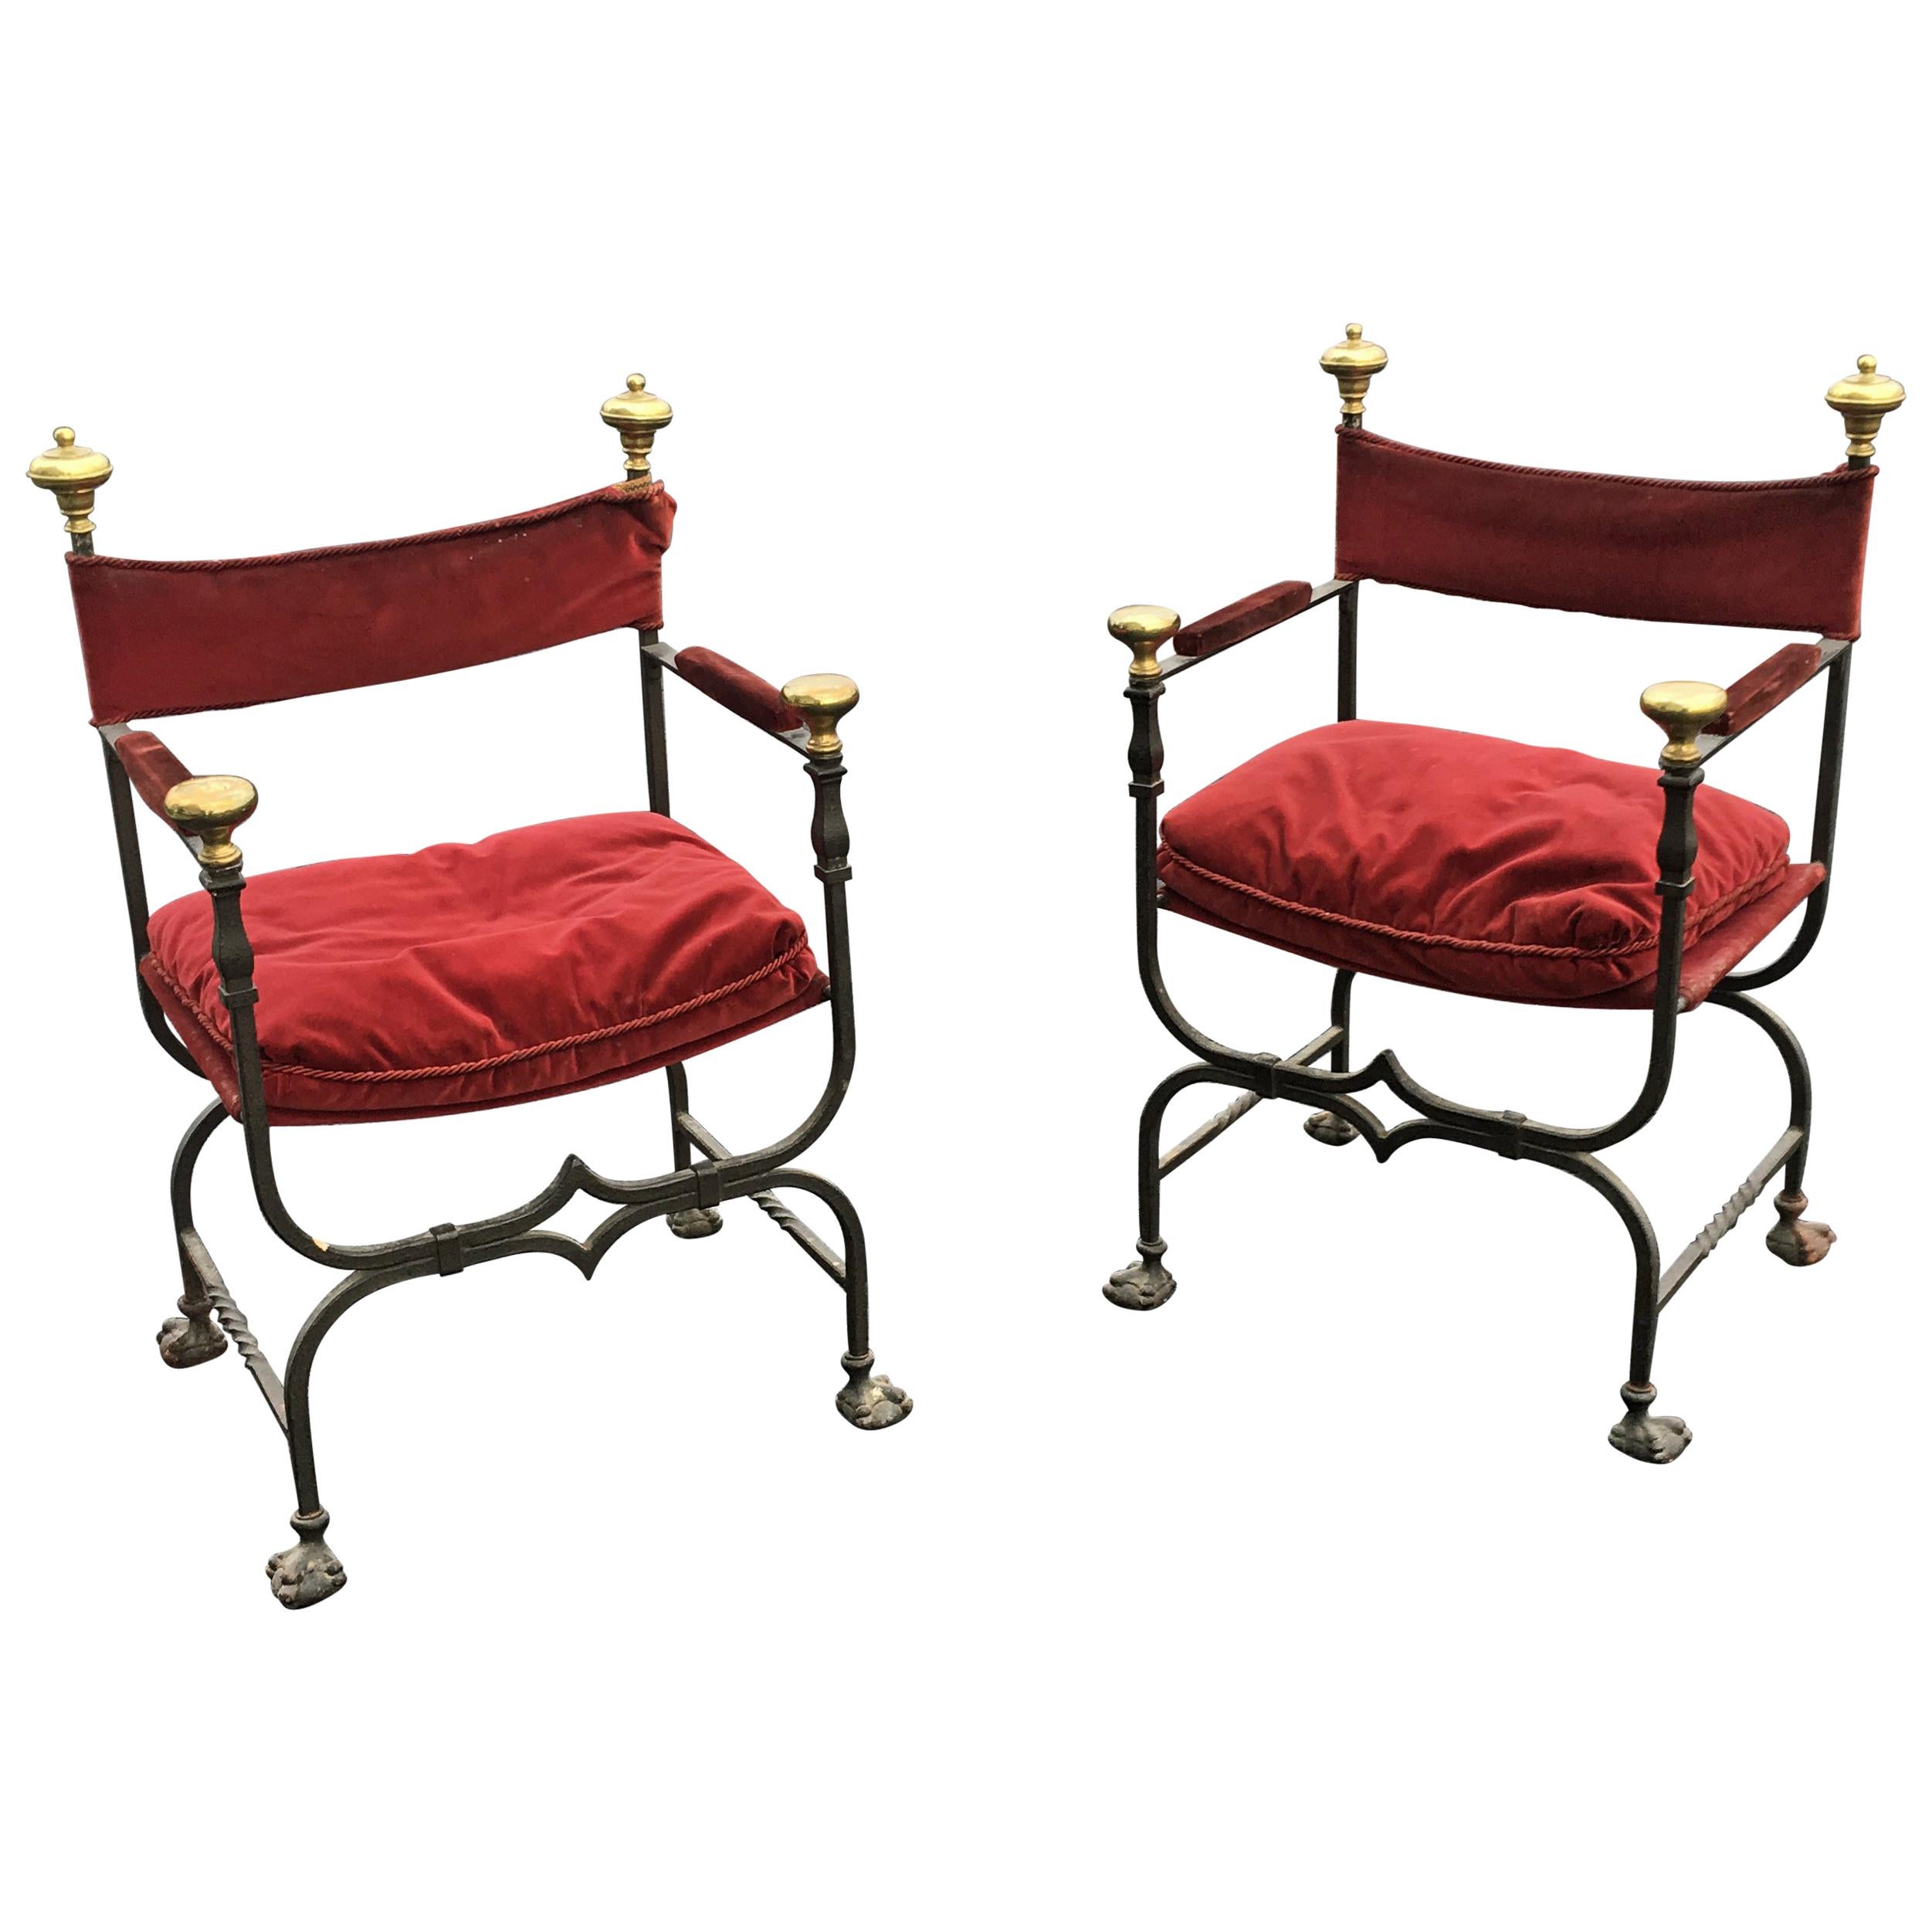 3 flämische Curule-Sessel aus Eisen, Messing und Samt, um 1900